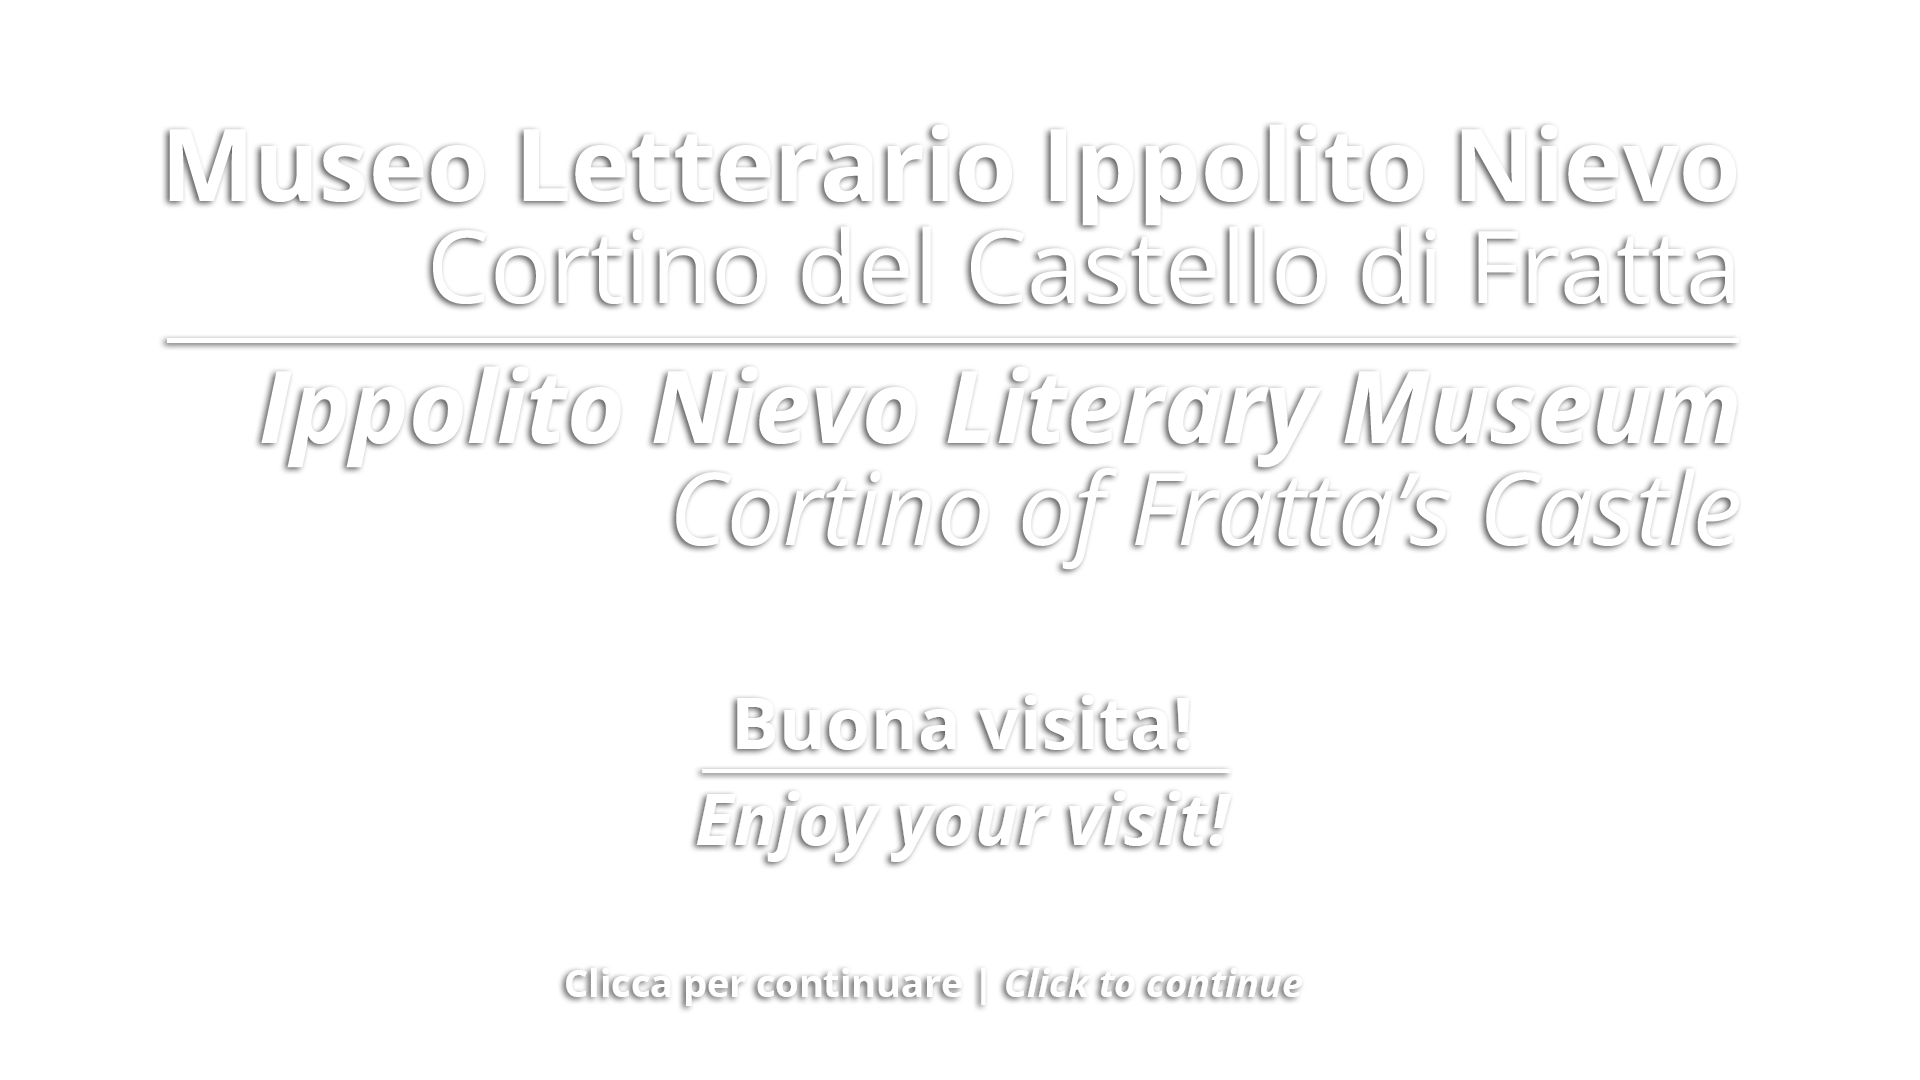 Museo Letterario Ippolito Nievo - Fratta, Fossalta di Portogruaro (VE).